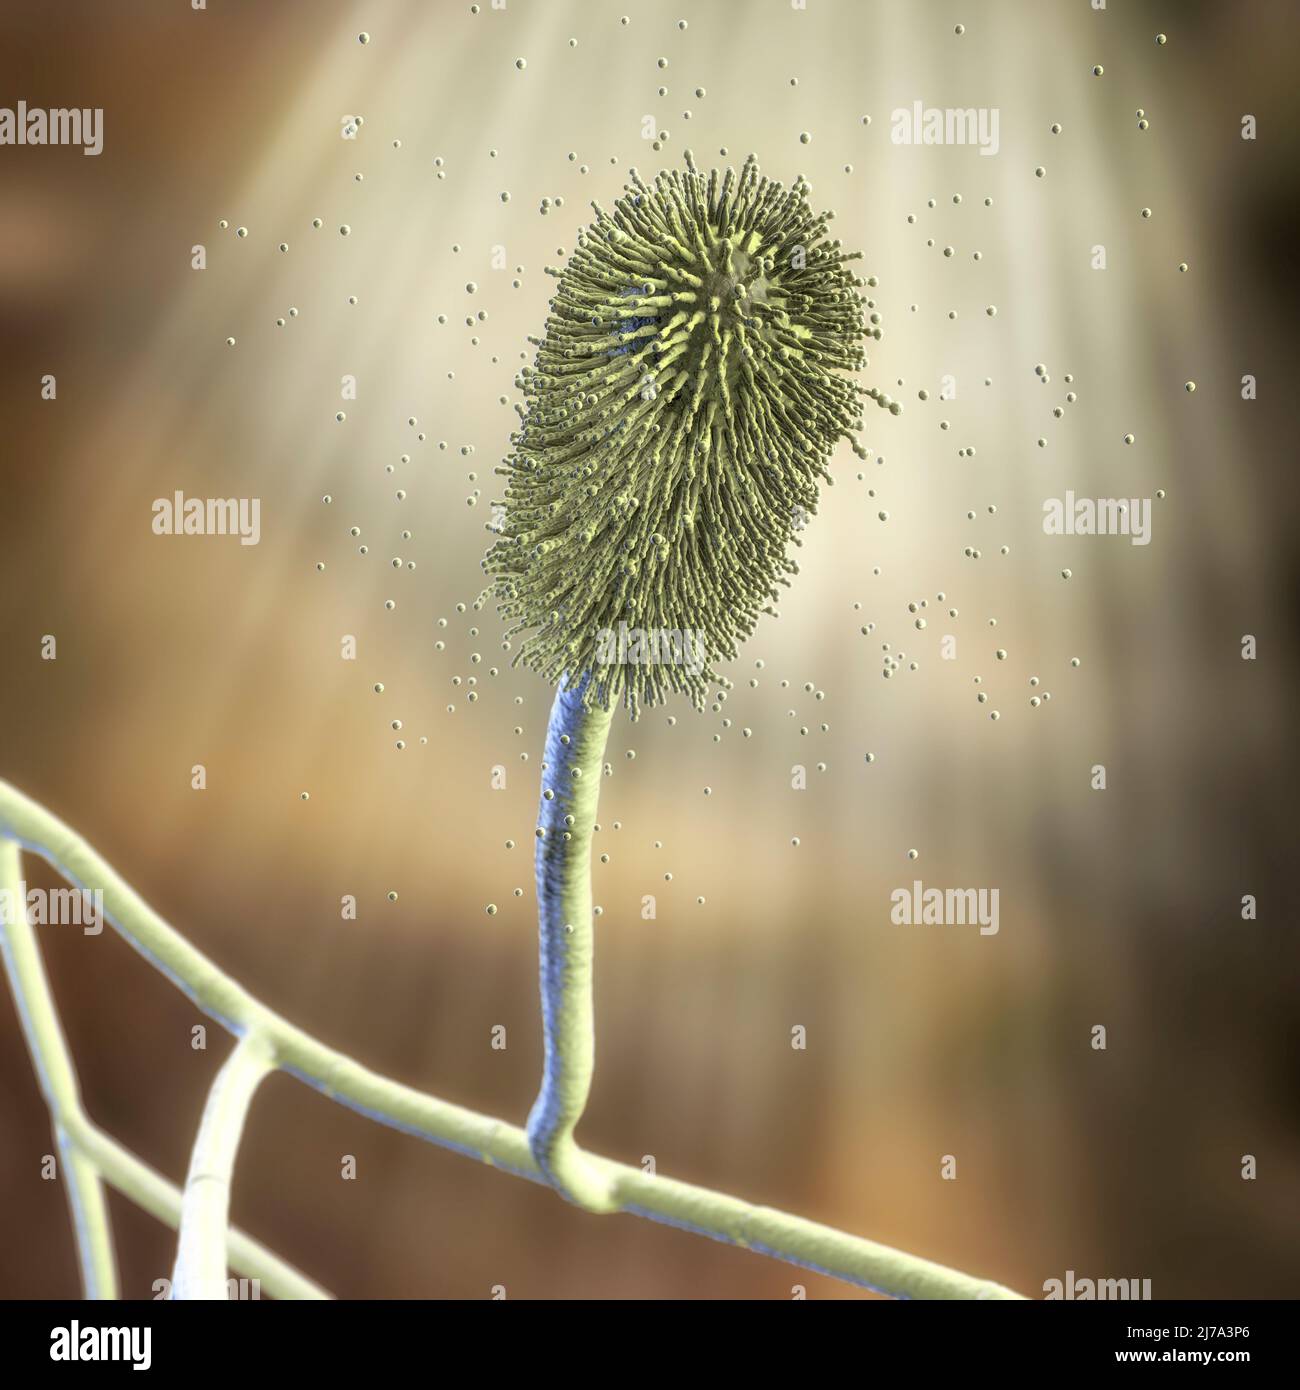 Aspergillus clavatus mould fungus, illustration Stock Photo